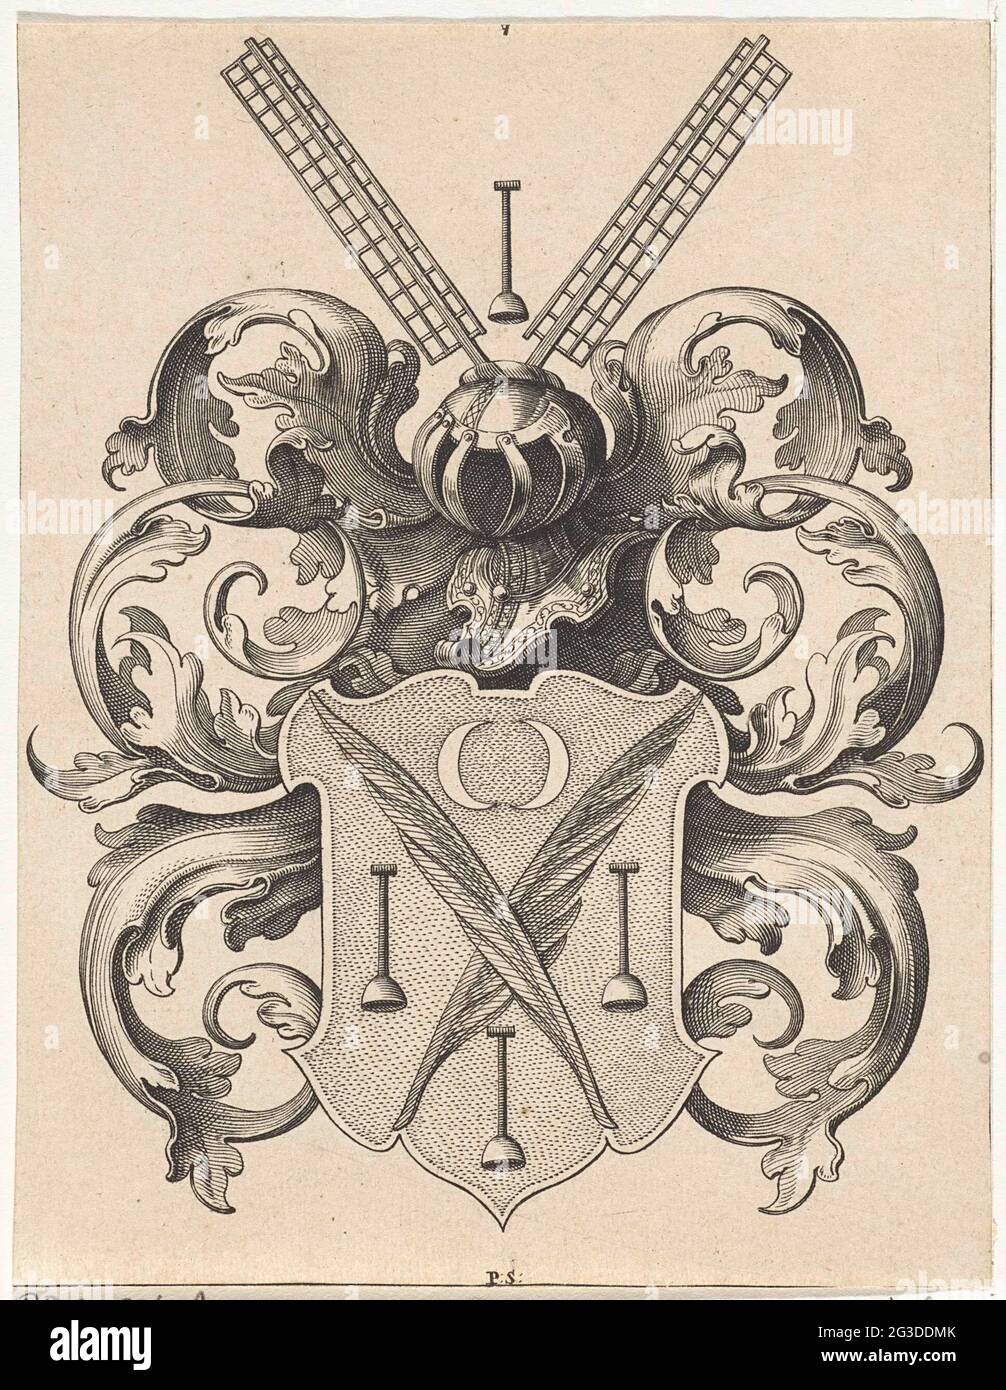 Escudo de Cornelis Gijsbertsz. Plemp. Escudo de armas del abogado, poeta y  músico latino Cornelis Gijsbertsz perteneciente al Muiderkring. Plemp. El  escudo de armas está cargado con dos ramas de palma que